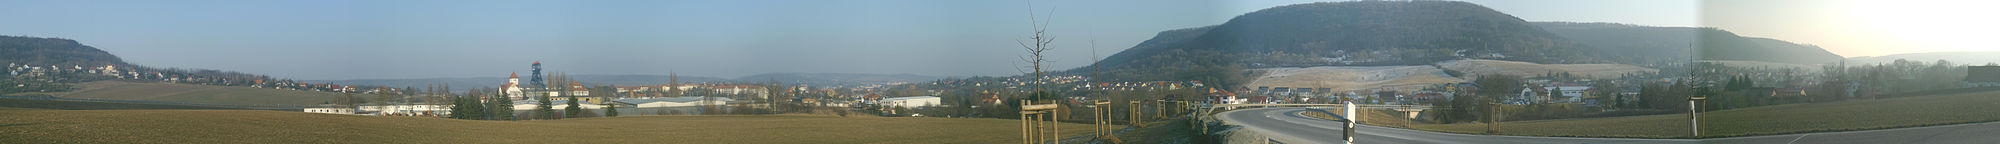 Panoramabild Sondershausen (West, Winter 2011); von links nach rechts: Frauenberg mit Jechaburg, Umgehungsstraße, Petersenschacht, Franzberg, Zentrum mit Schloss, Possen, Bebra